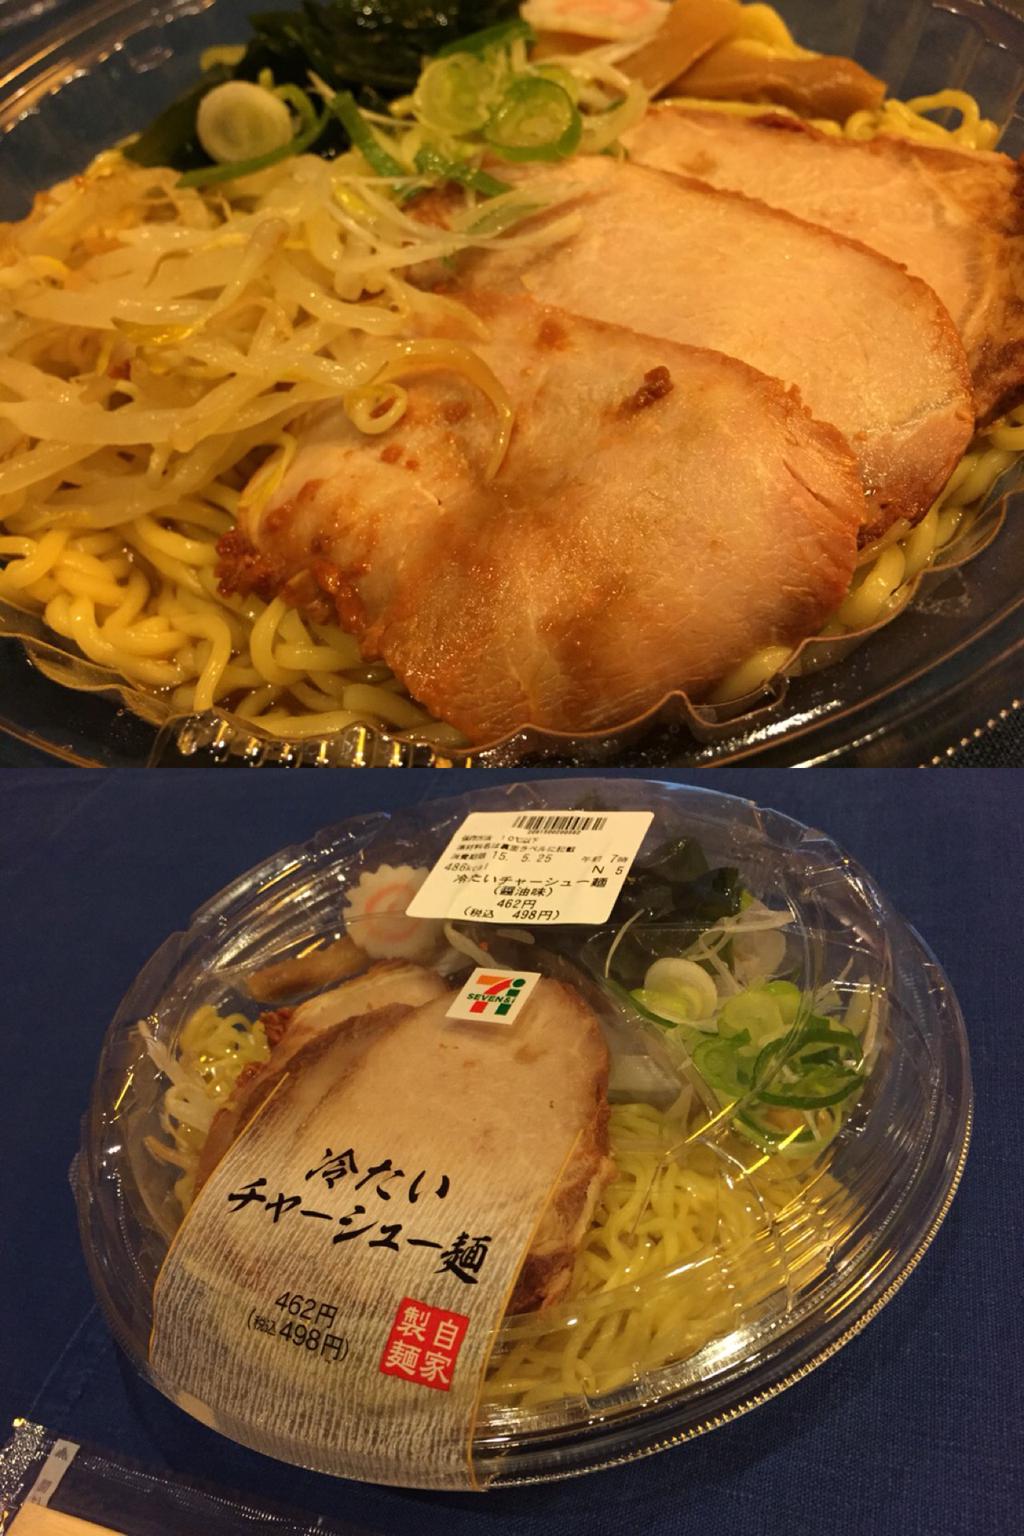 武蔵野 SEVEN&i PREMIUM 冷たいチャーシュー麺 (醤油味) 486kcal  付属のスパイスをかけたら、寿がきやっぽい味になったような。 